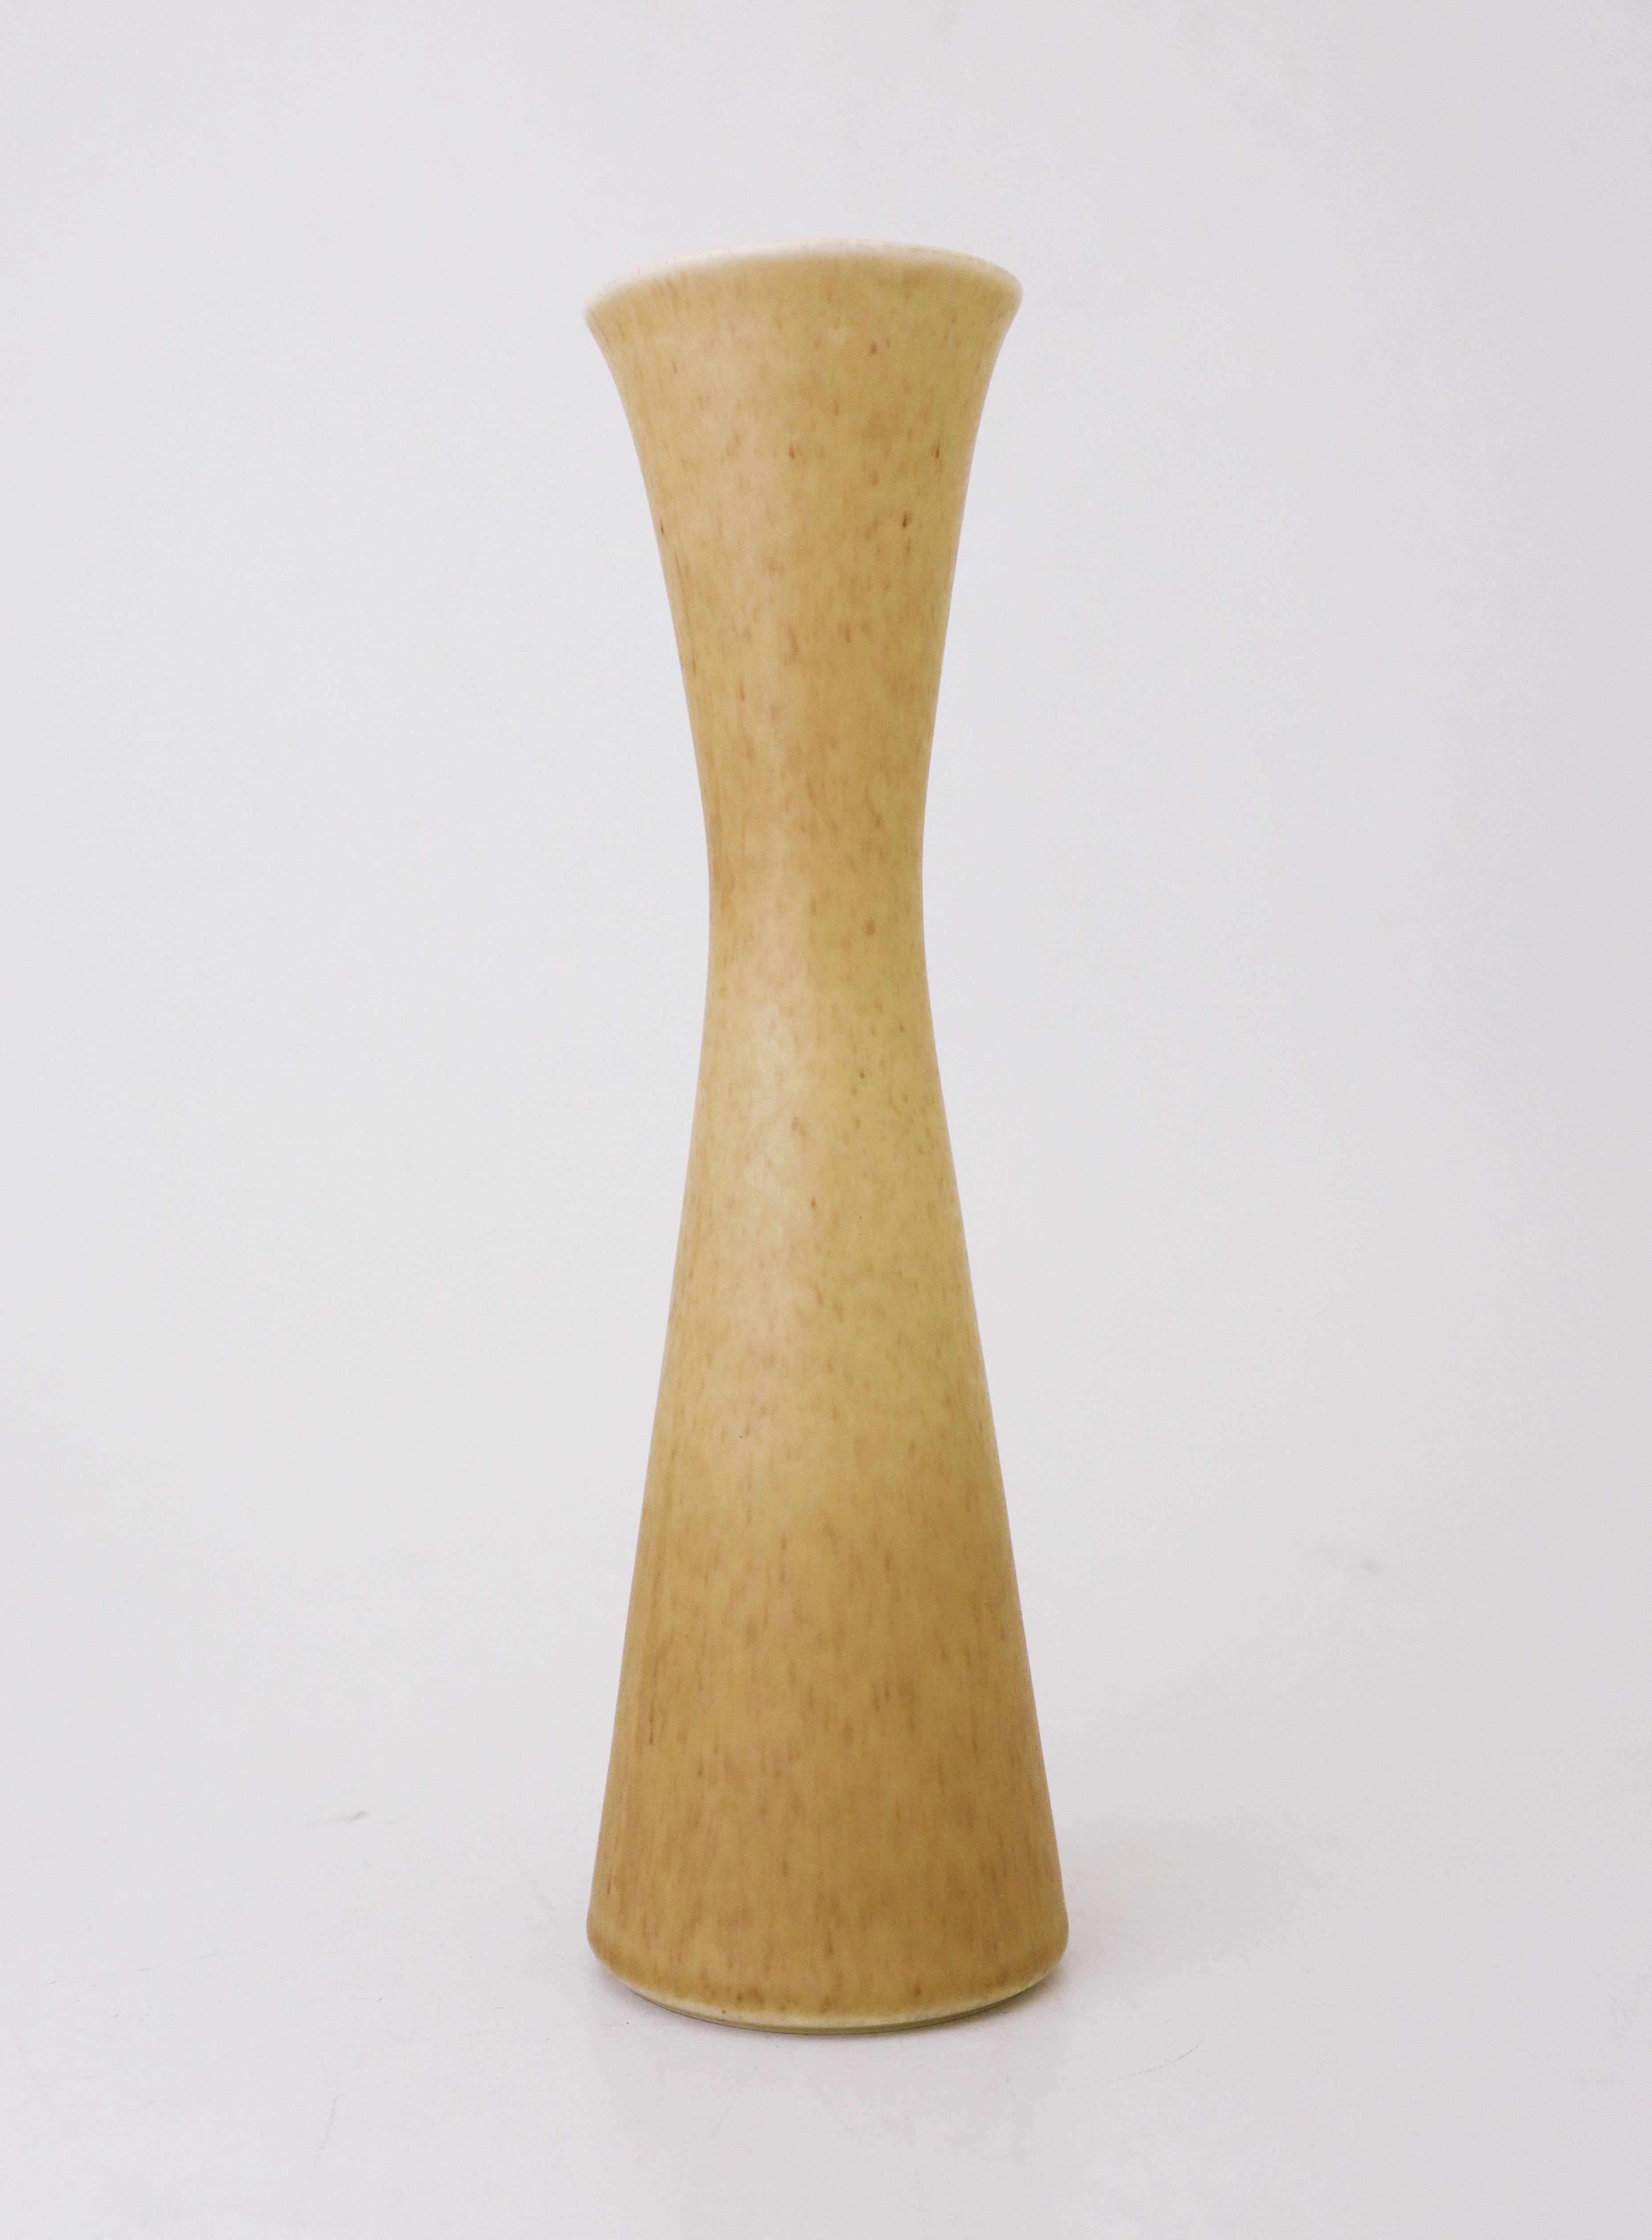 Vase à glaçure jaune conçu par Gunnar Nylund chez Rörstrand de Design/One, le vase mesure 26 cm de haut et 7,5 cm de diamètre. Il est en parfait état et marqué comme étant de première qualité.
Gunnar Nylund est né à Paris en 1904 de parents